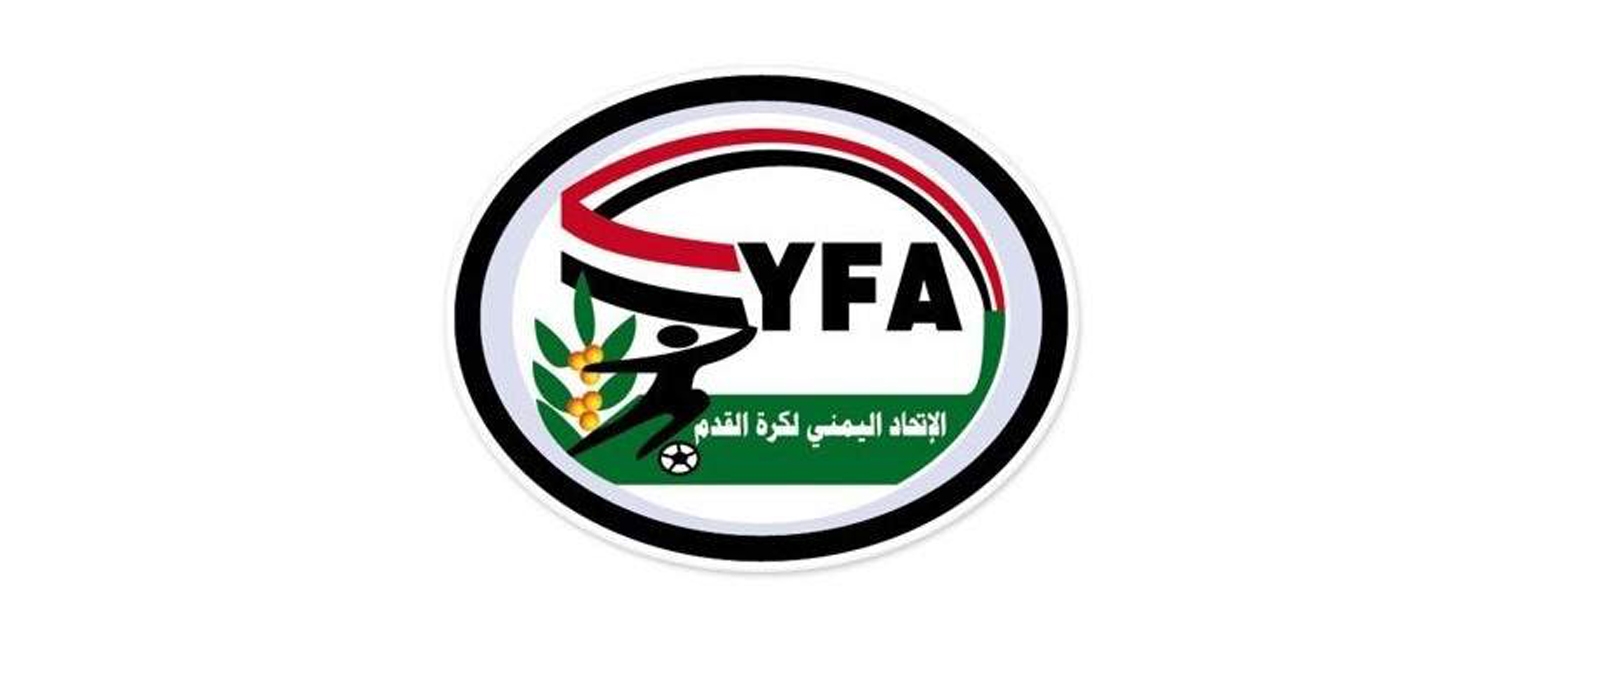 الاتحاد اليمني لكرة القدم يحذر من المشاركة في أي أنشطة رياضية ينظمها كيان غير شرعي